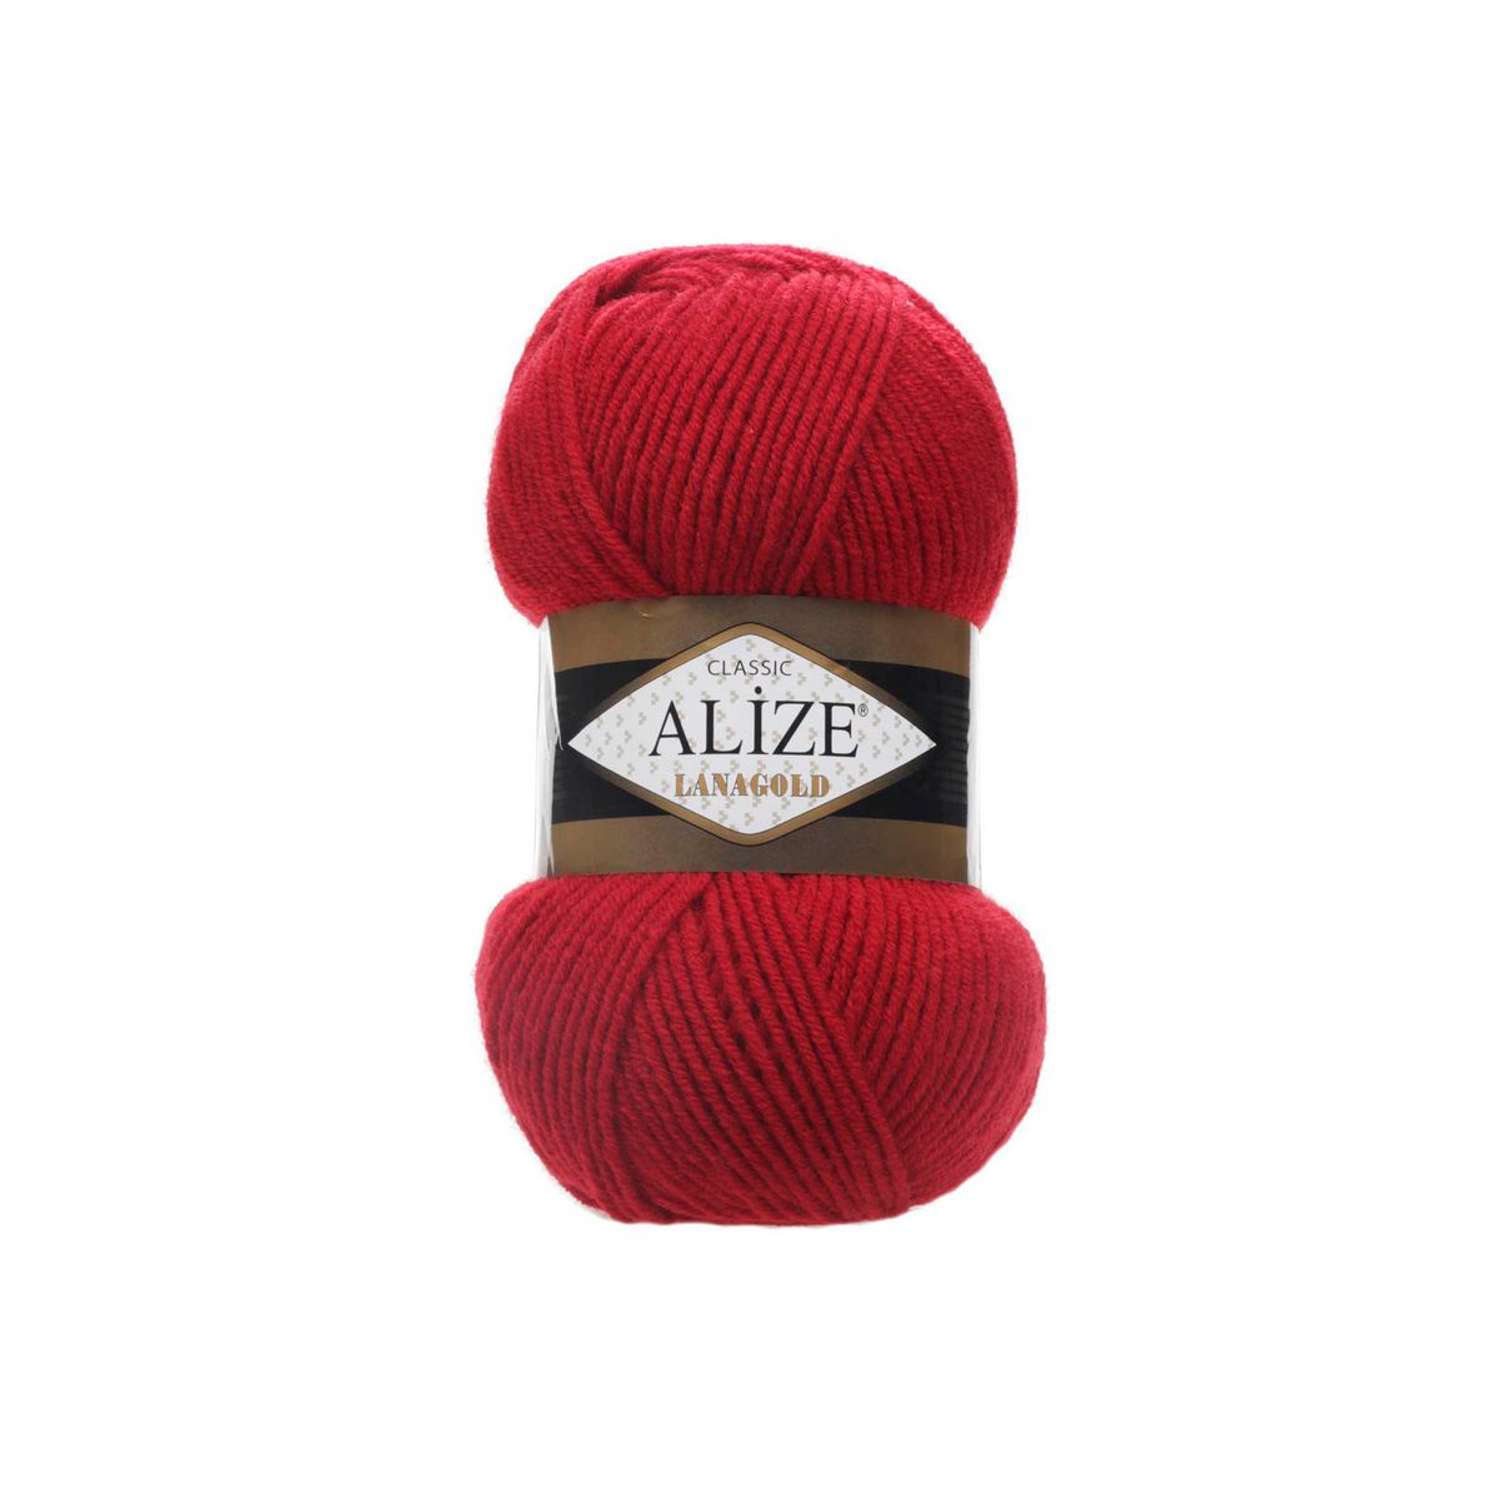 Пряжа Alize полушерстяная мягкая тонкая теплая Lanagold 100 гр 240 м 5 мотков 56 красный - фото 6